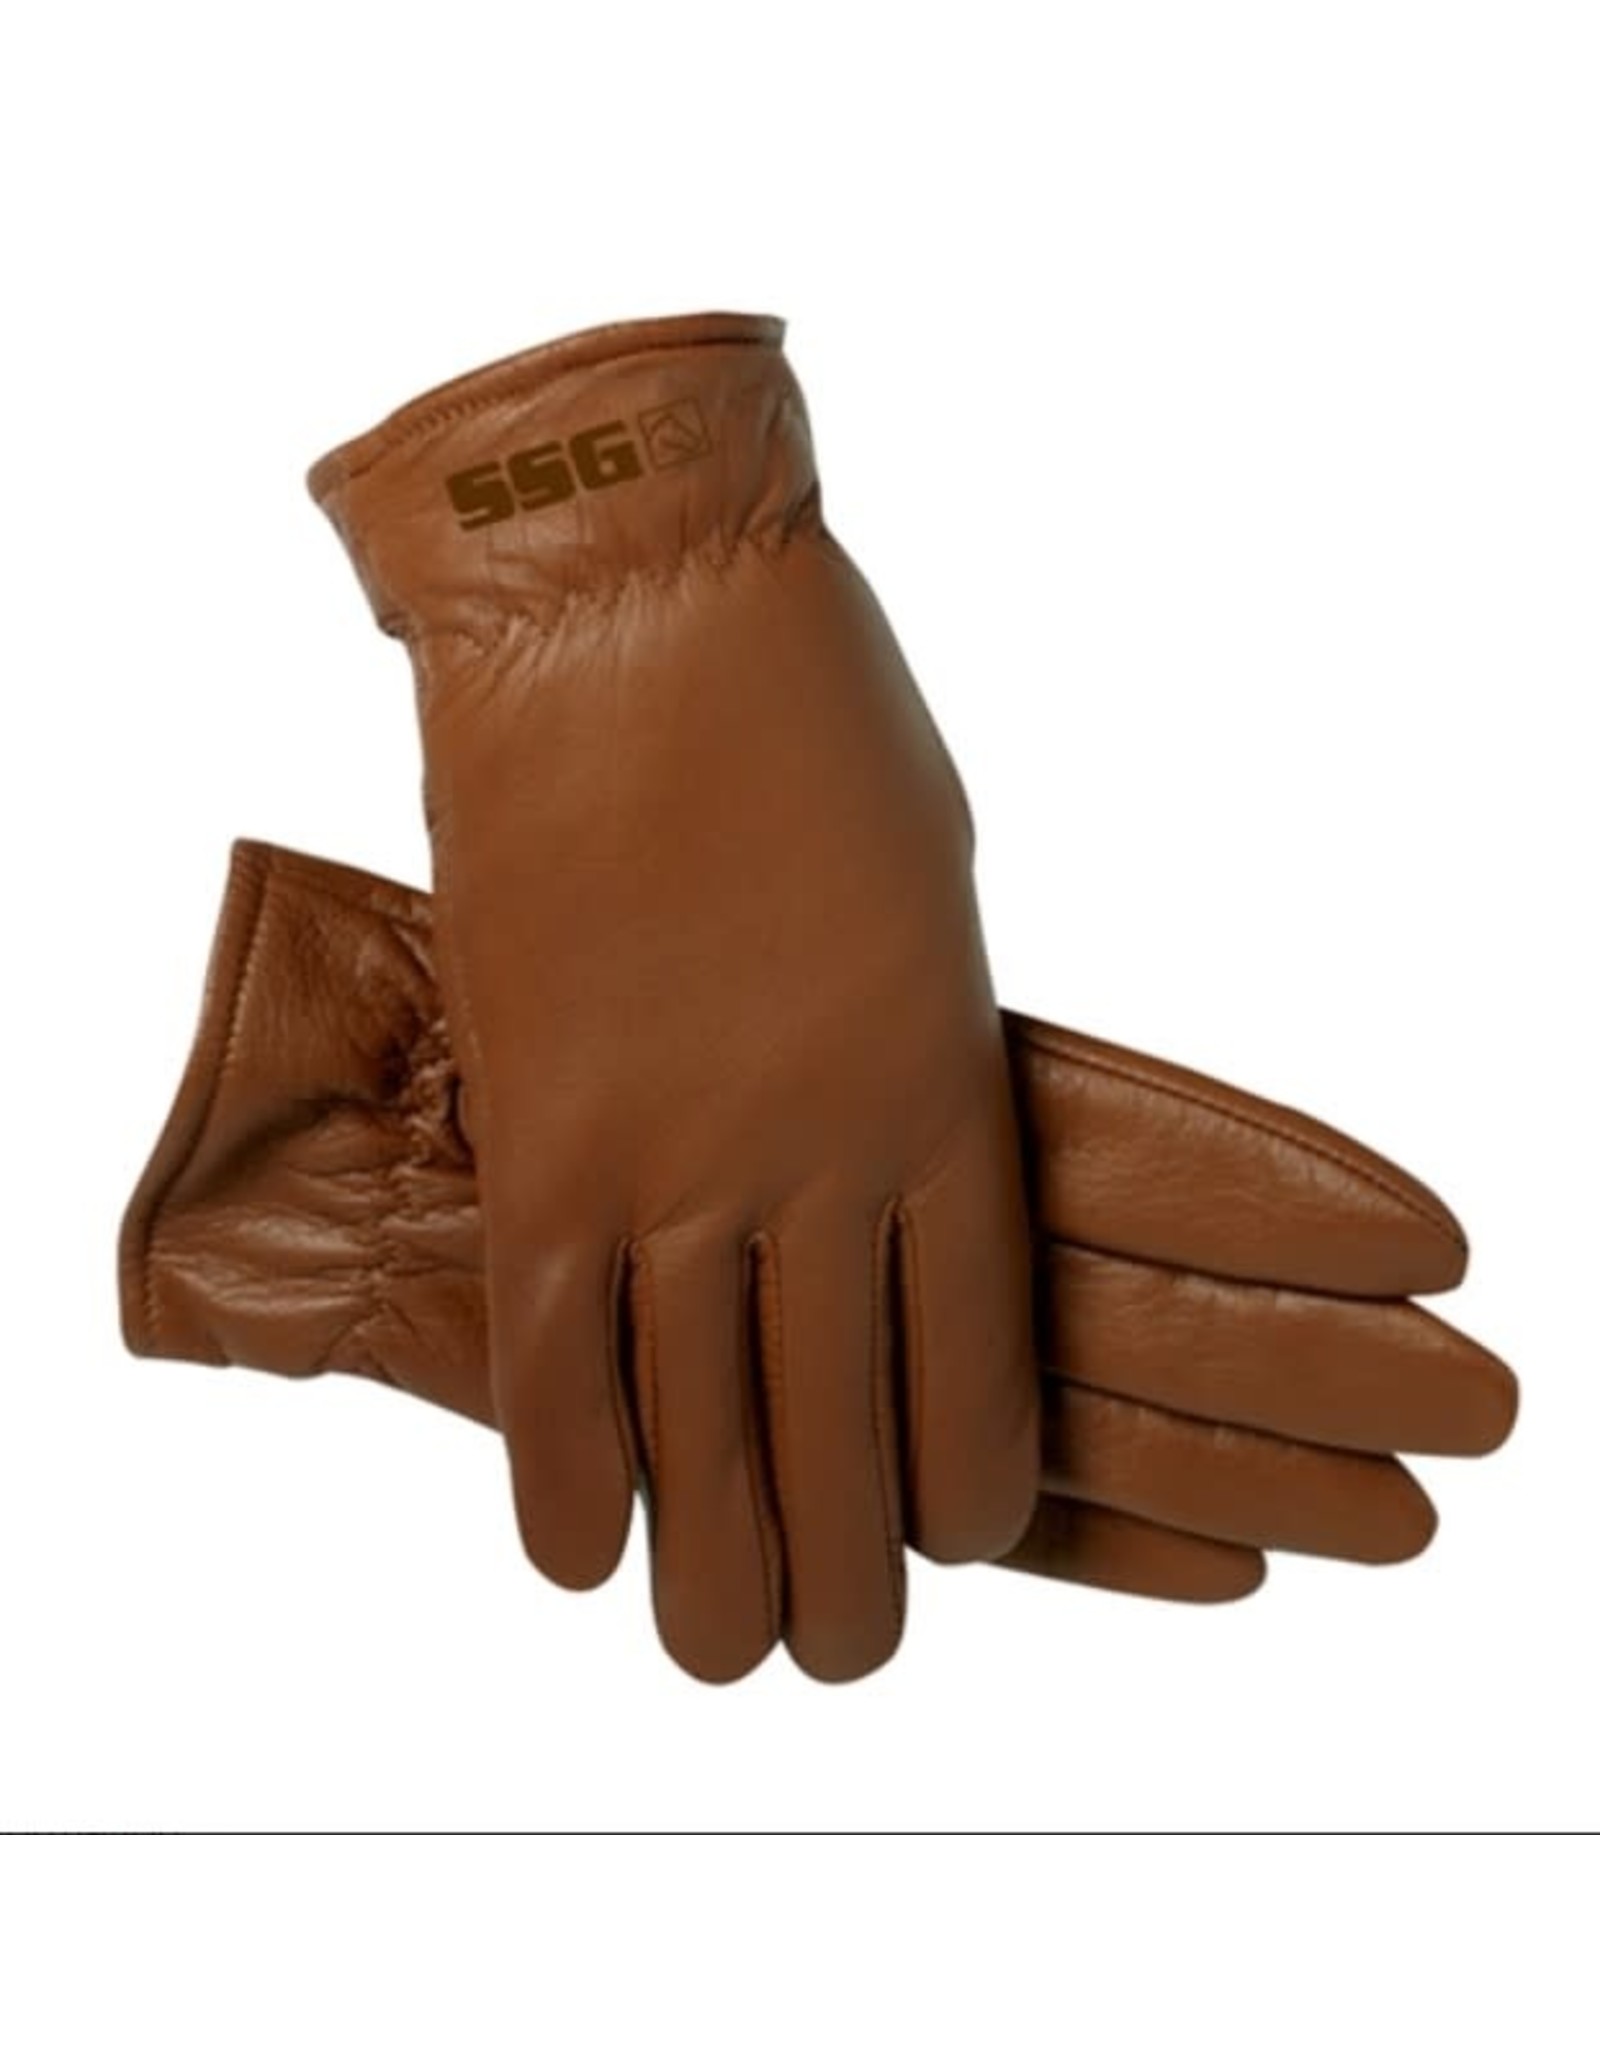 SSG Gloves SSG Winter Rancher